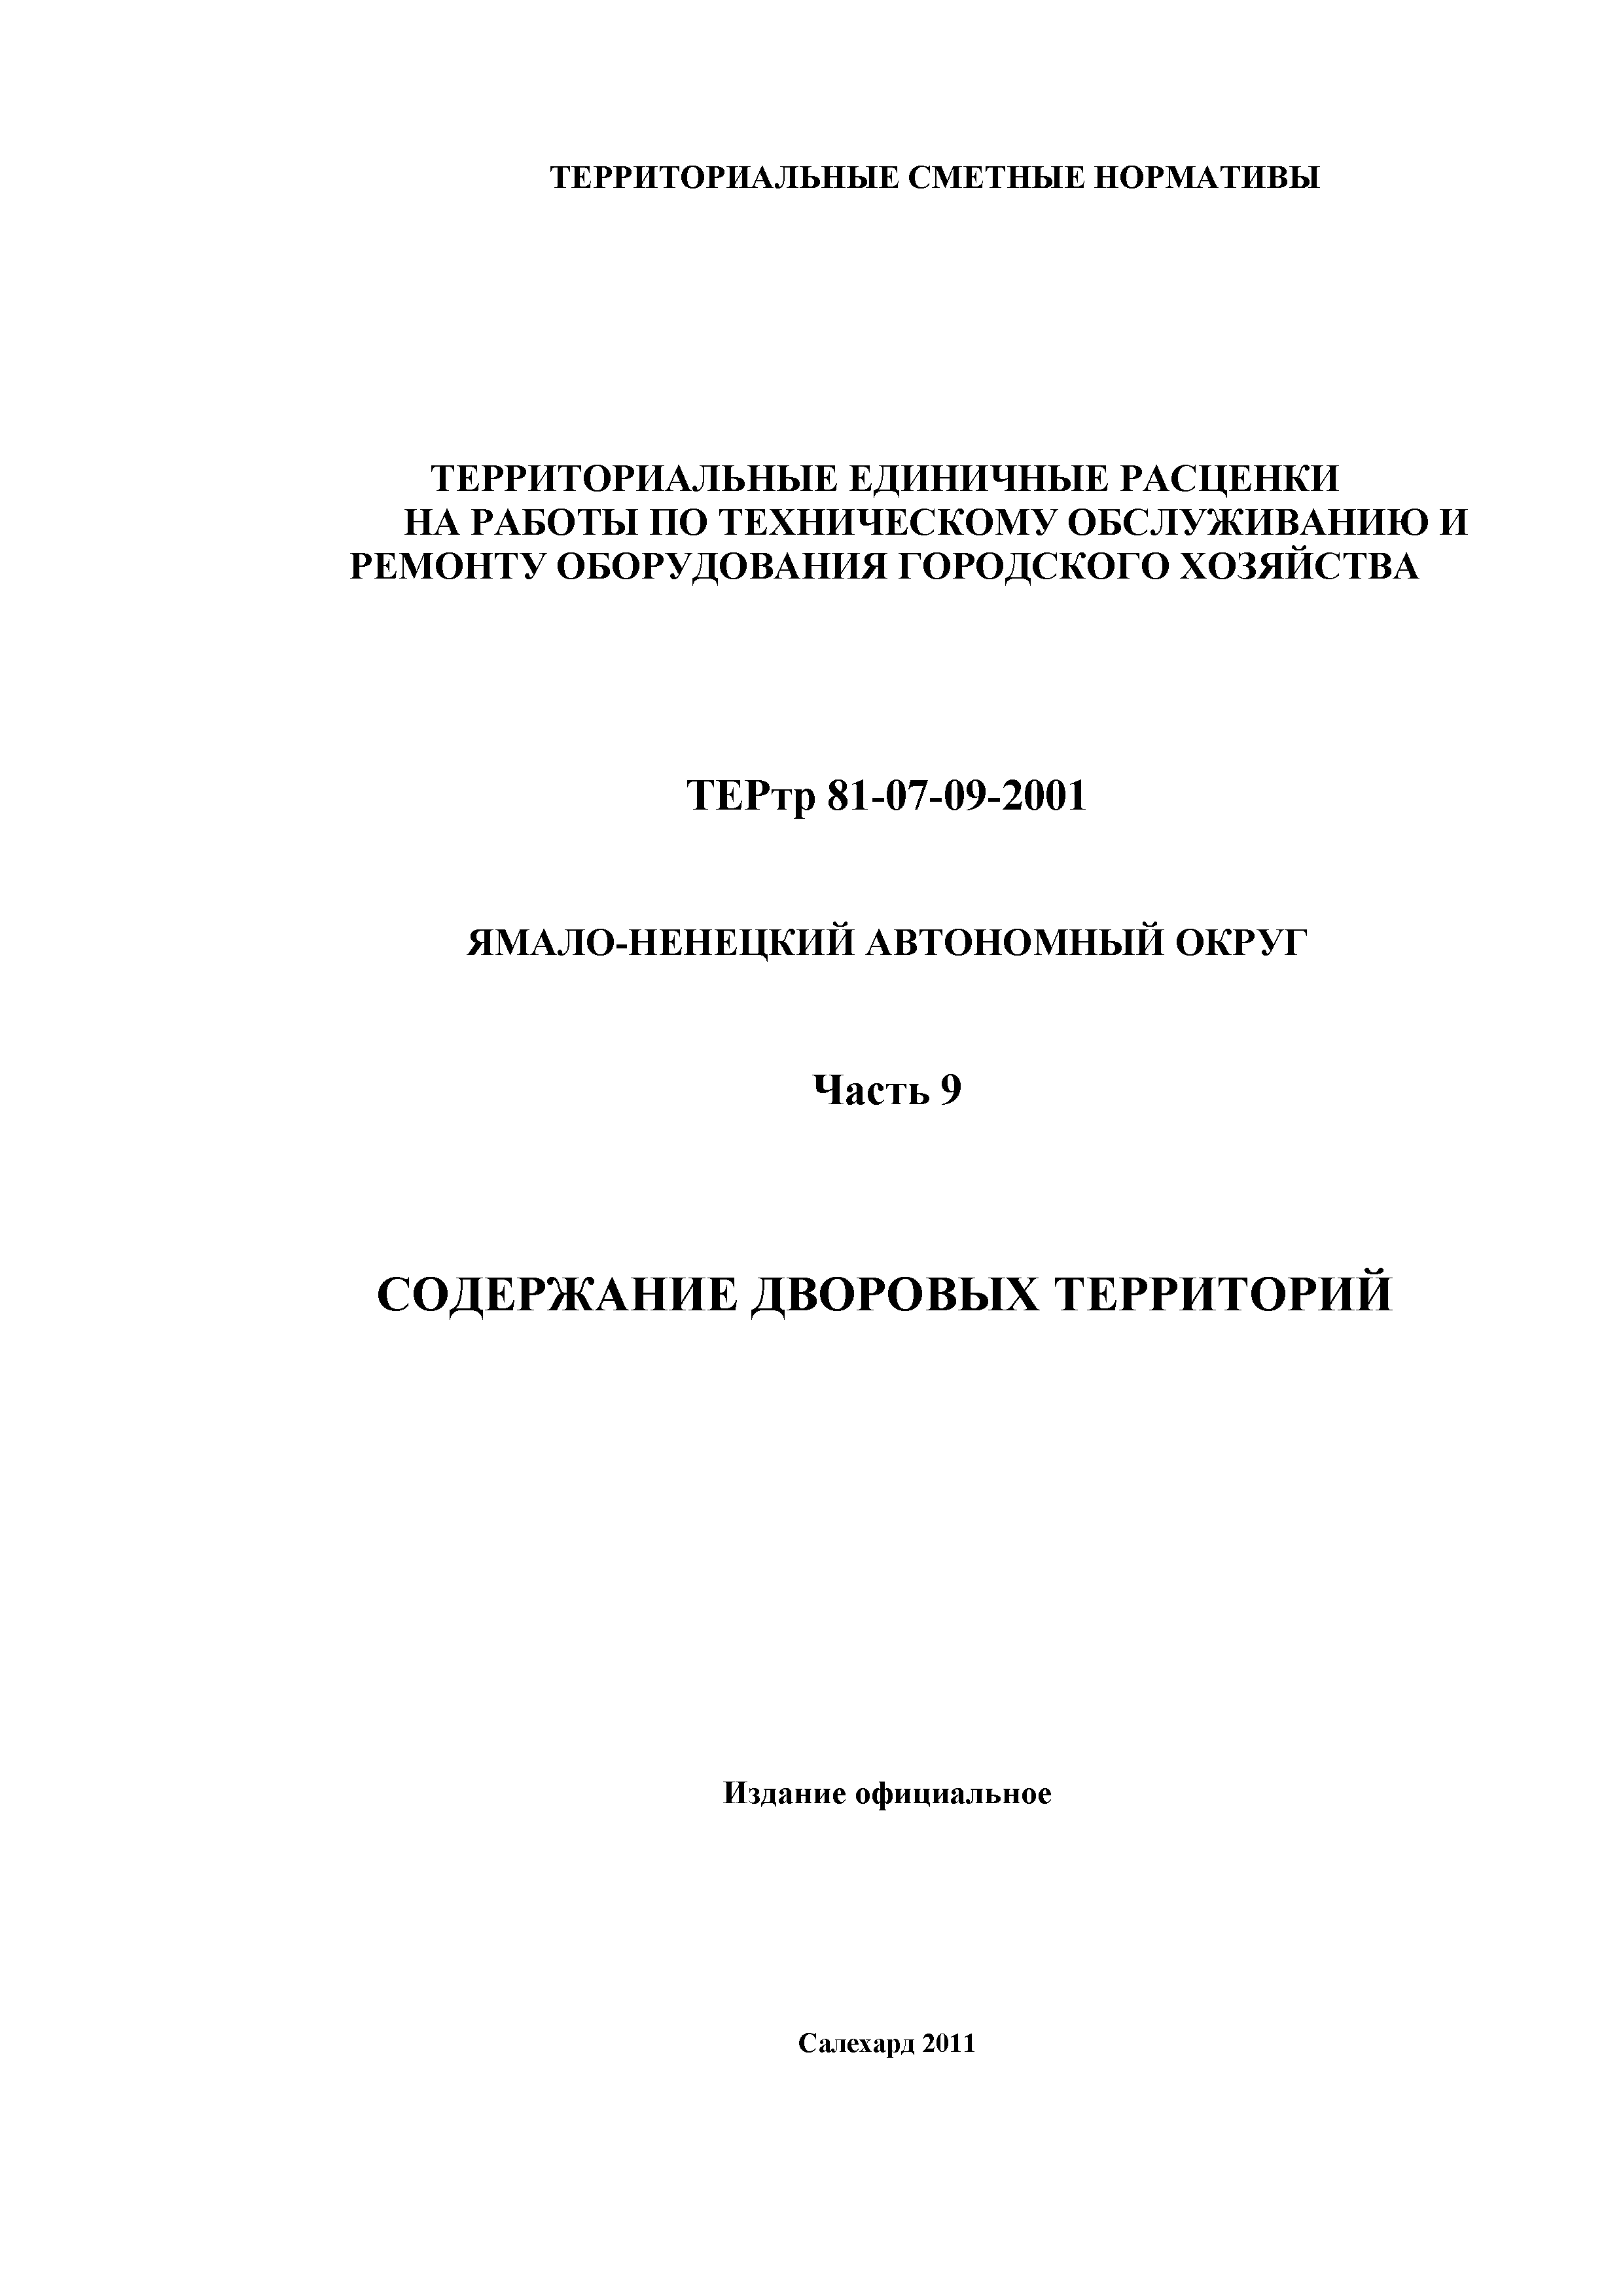 ТЕРтр Ямало-Ненецкий автономный округ 09-2001